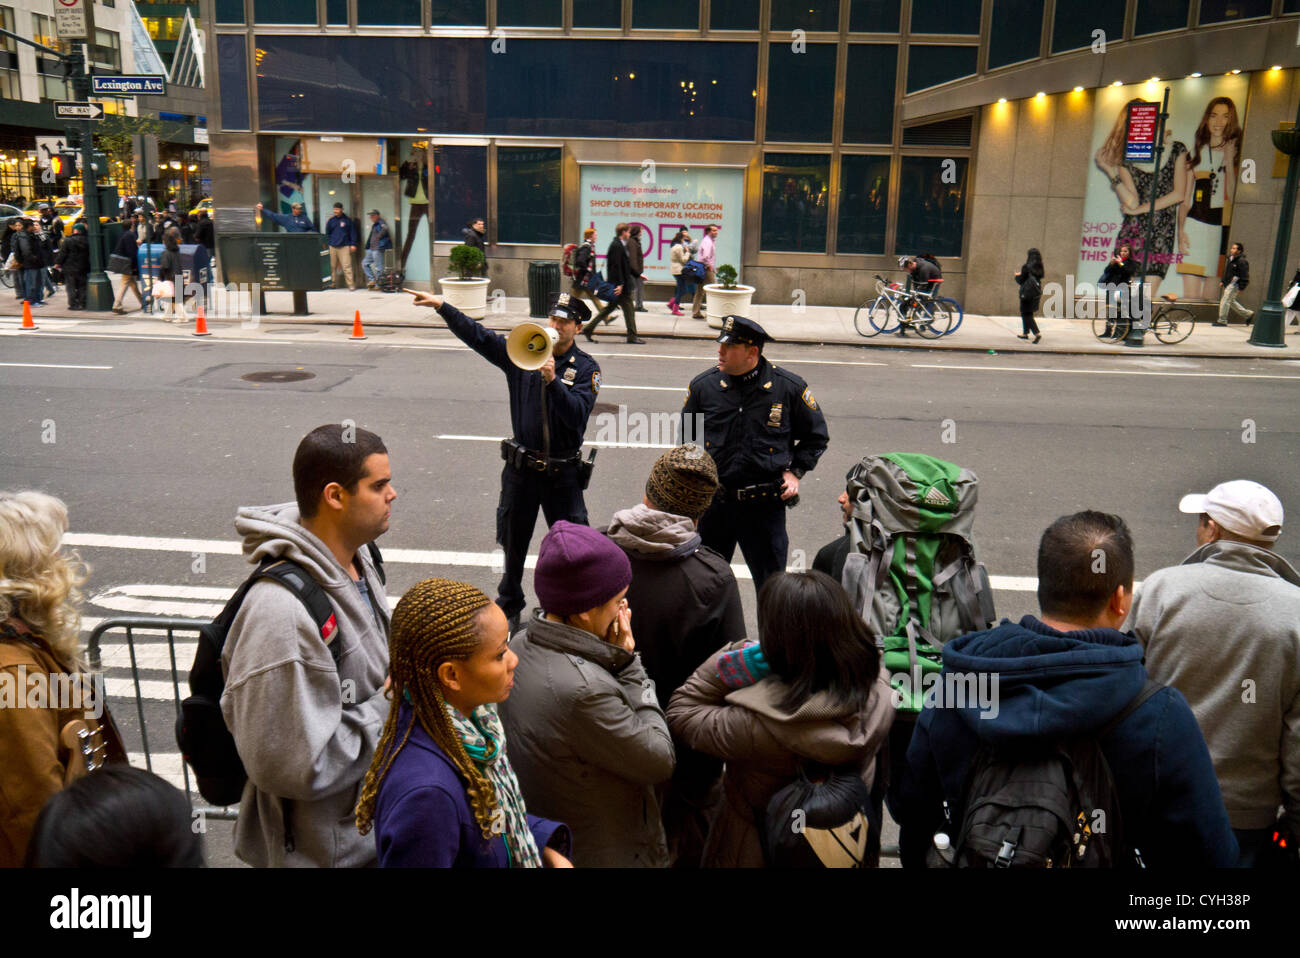 NEW YORK - 2 novembre: pendolari attendere a lungo linee per il servizio di autobus intorno a Grand Central post uragano Sandy Novembre 2, 2012 in New York City. (Foto di Donald Bowers ) Foto Stock